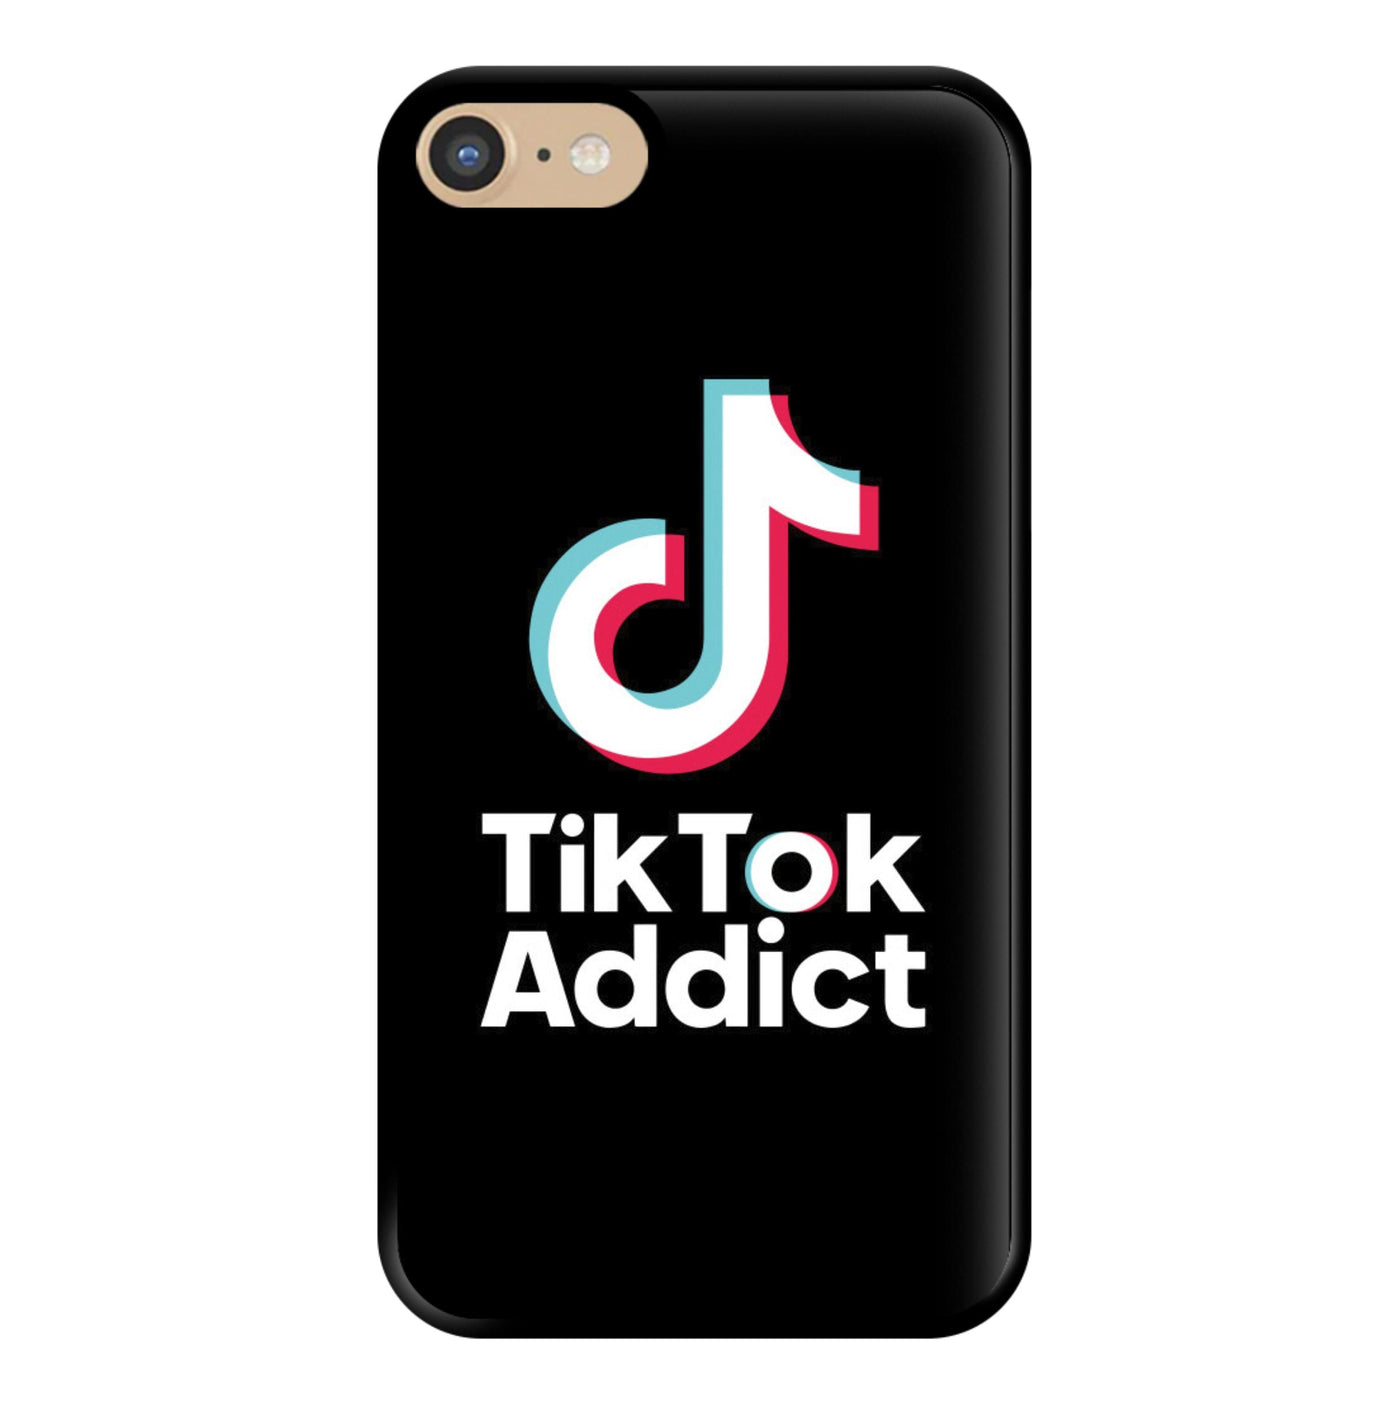 TikTok Addict Phone Case